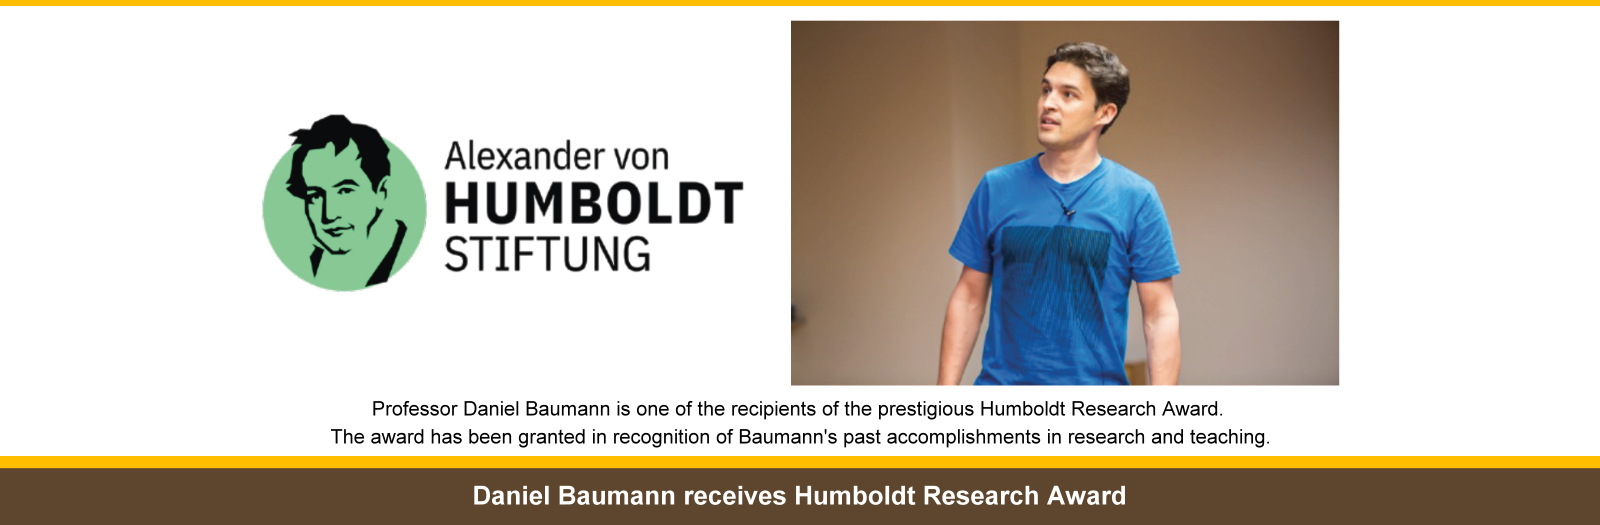 Daniel Baumann receives Humboldt Research Award